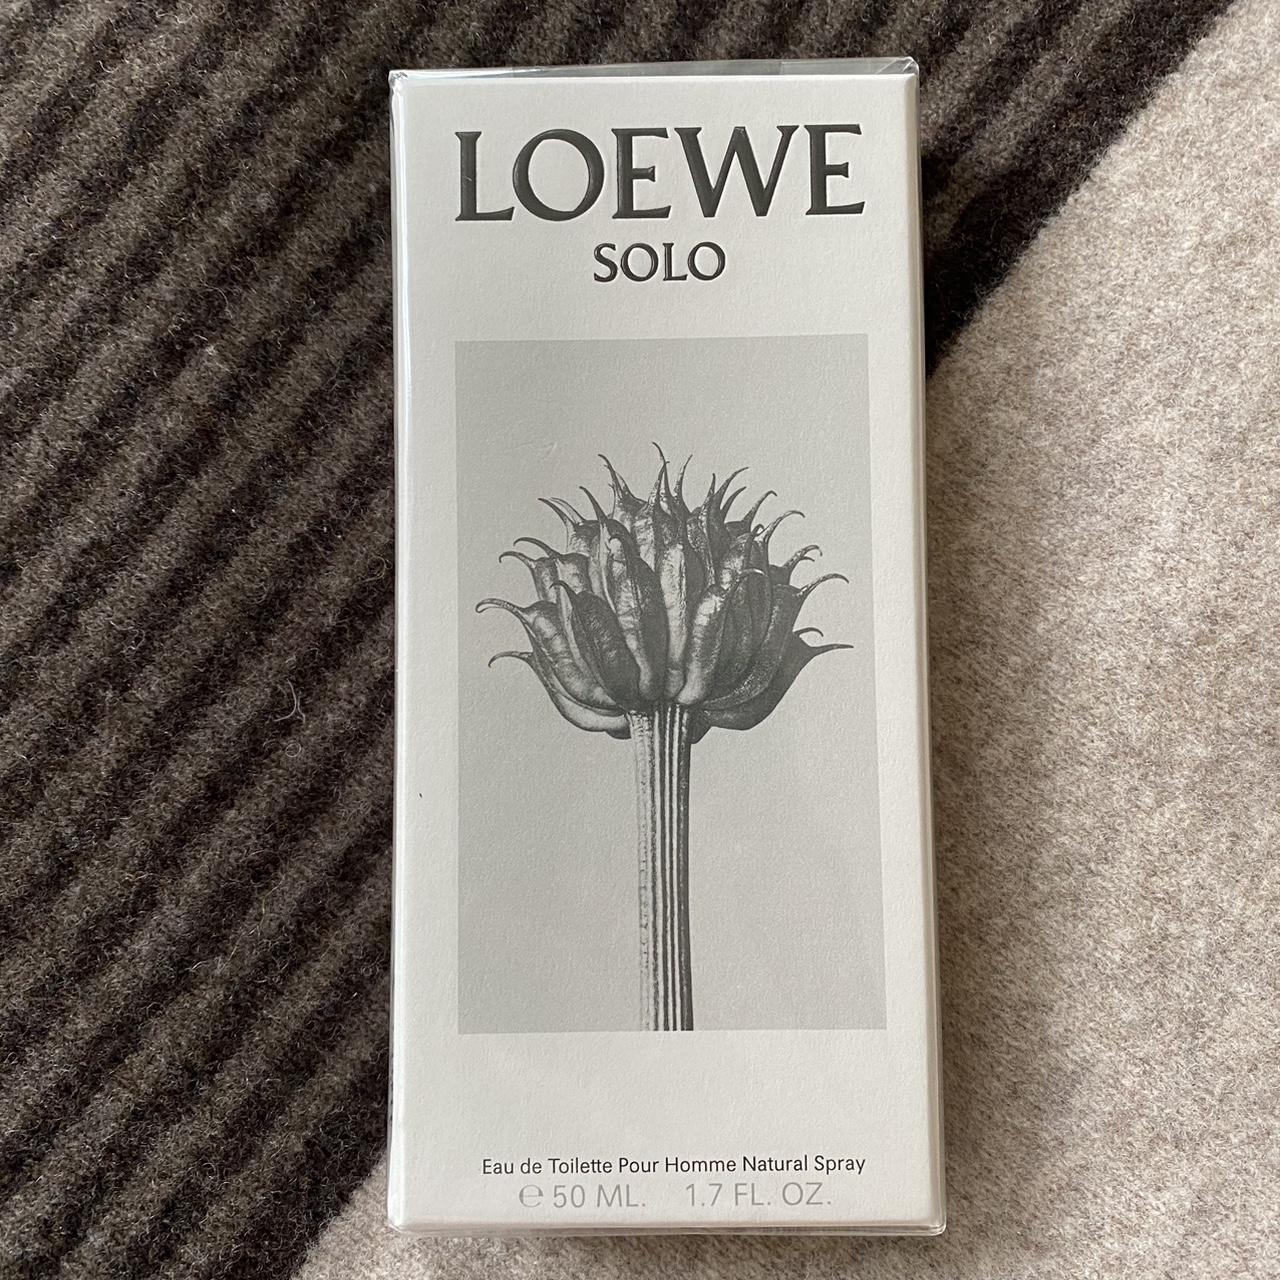 Loewe Fragrance | Depop